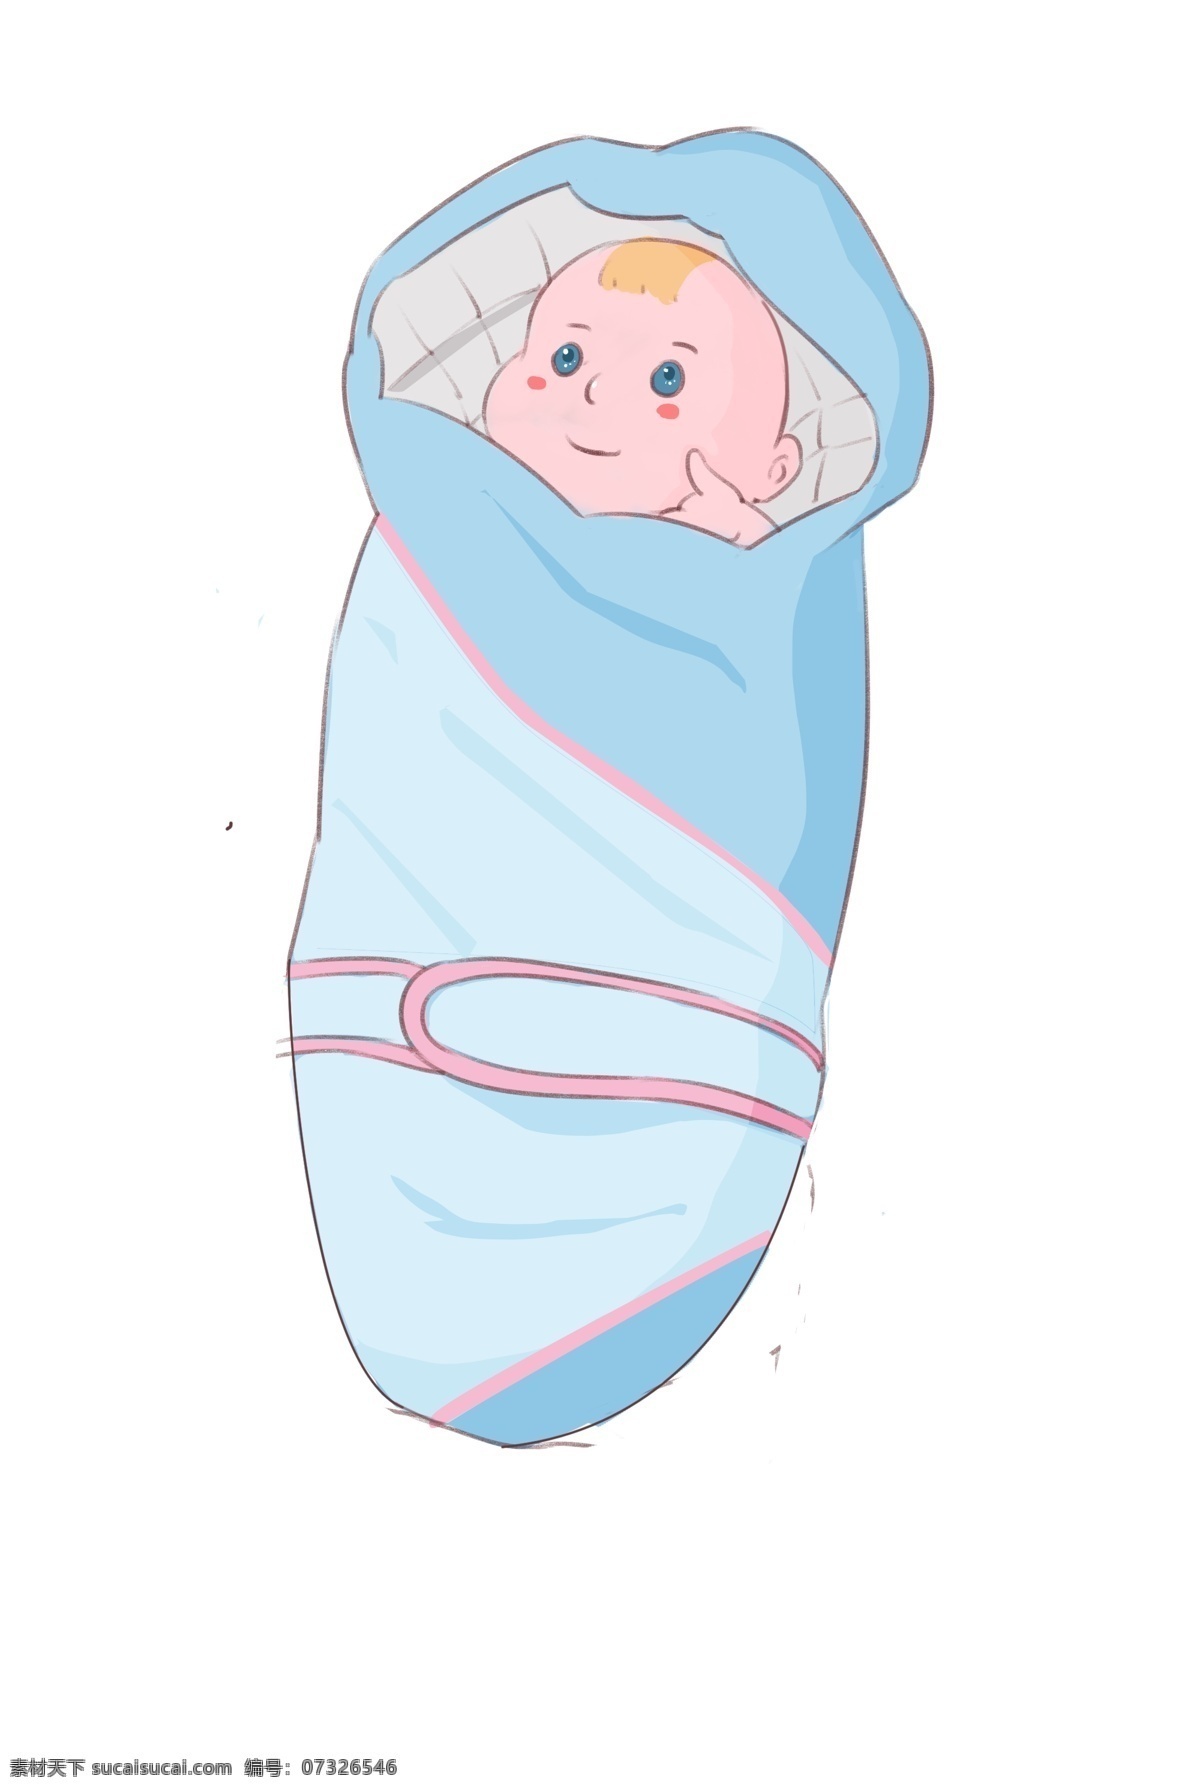 婴儿 睡袋 装饰 插画 婴儿睡袋 蓝色的睡袋 漂亮的睡袋 睡袋装饰 睡袋插画 可爱的婴儿 立体睡袋